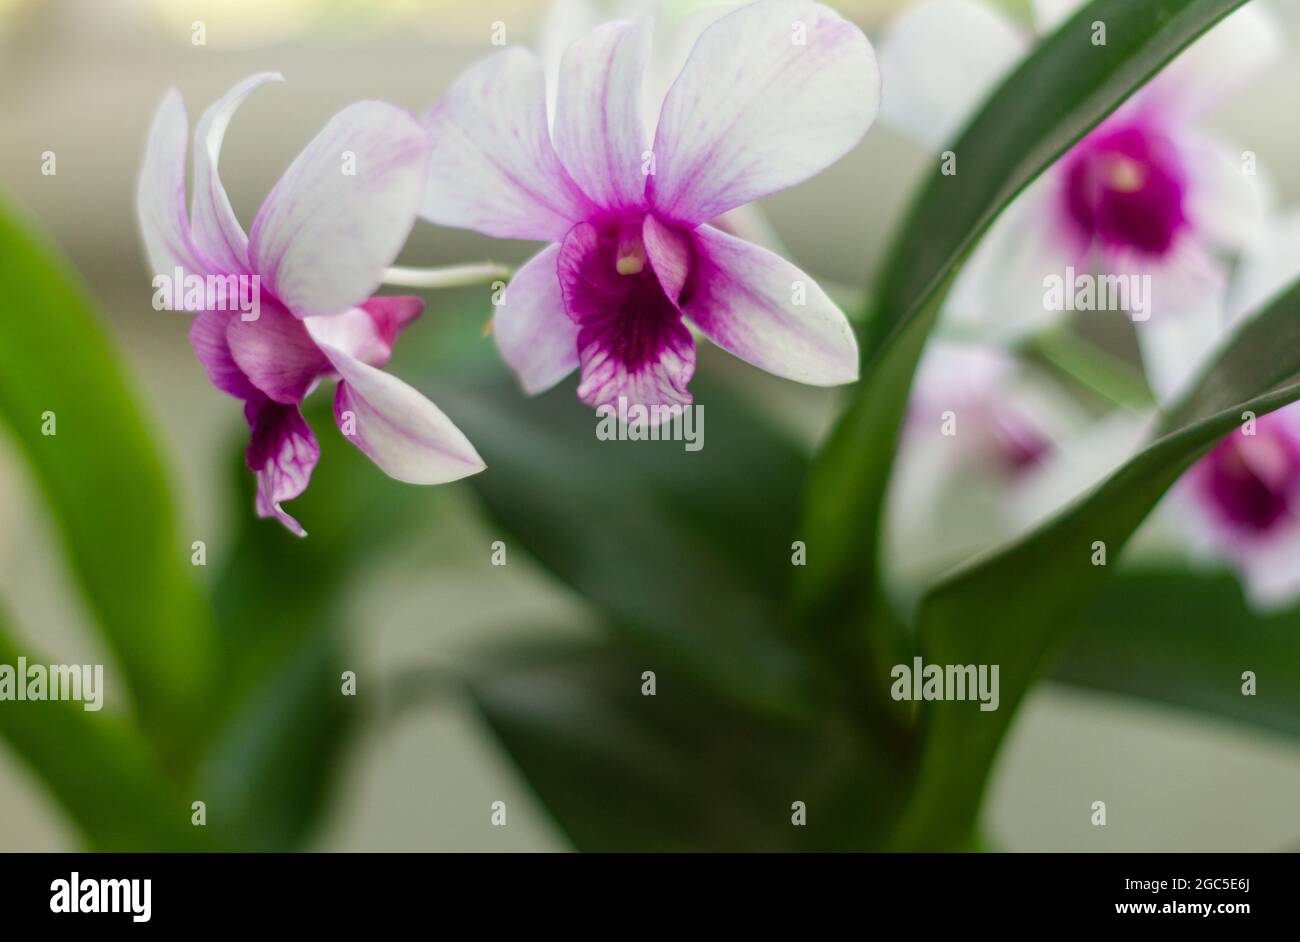 Las plantas de orquídeas están en flor en blanco y púrpura, se pueden utilizar como gotas de fondo y otras ilustraciones. Esta orquídea es un dendrobium (orquídeas epifíticas) Foto de stock